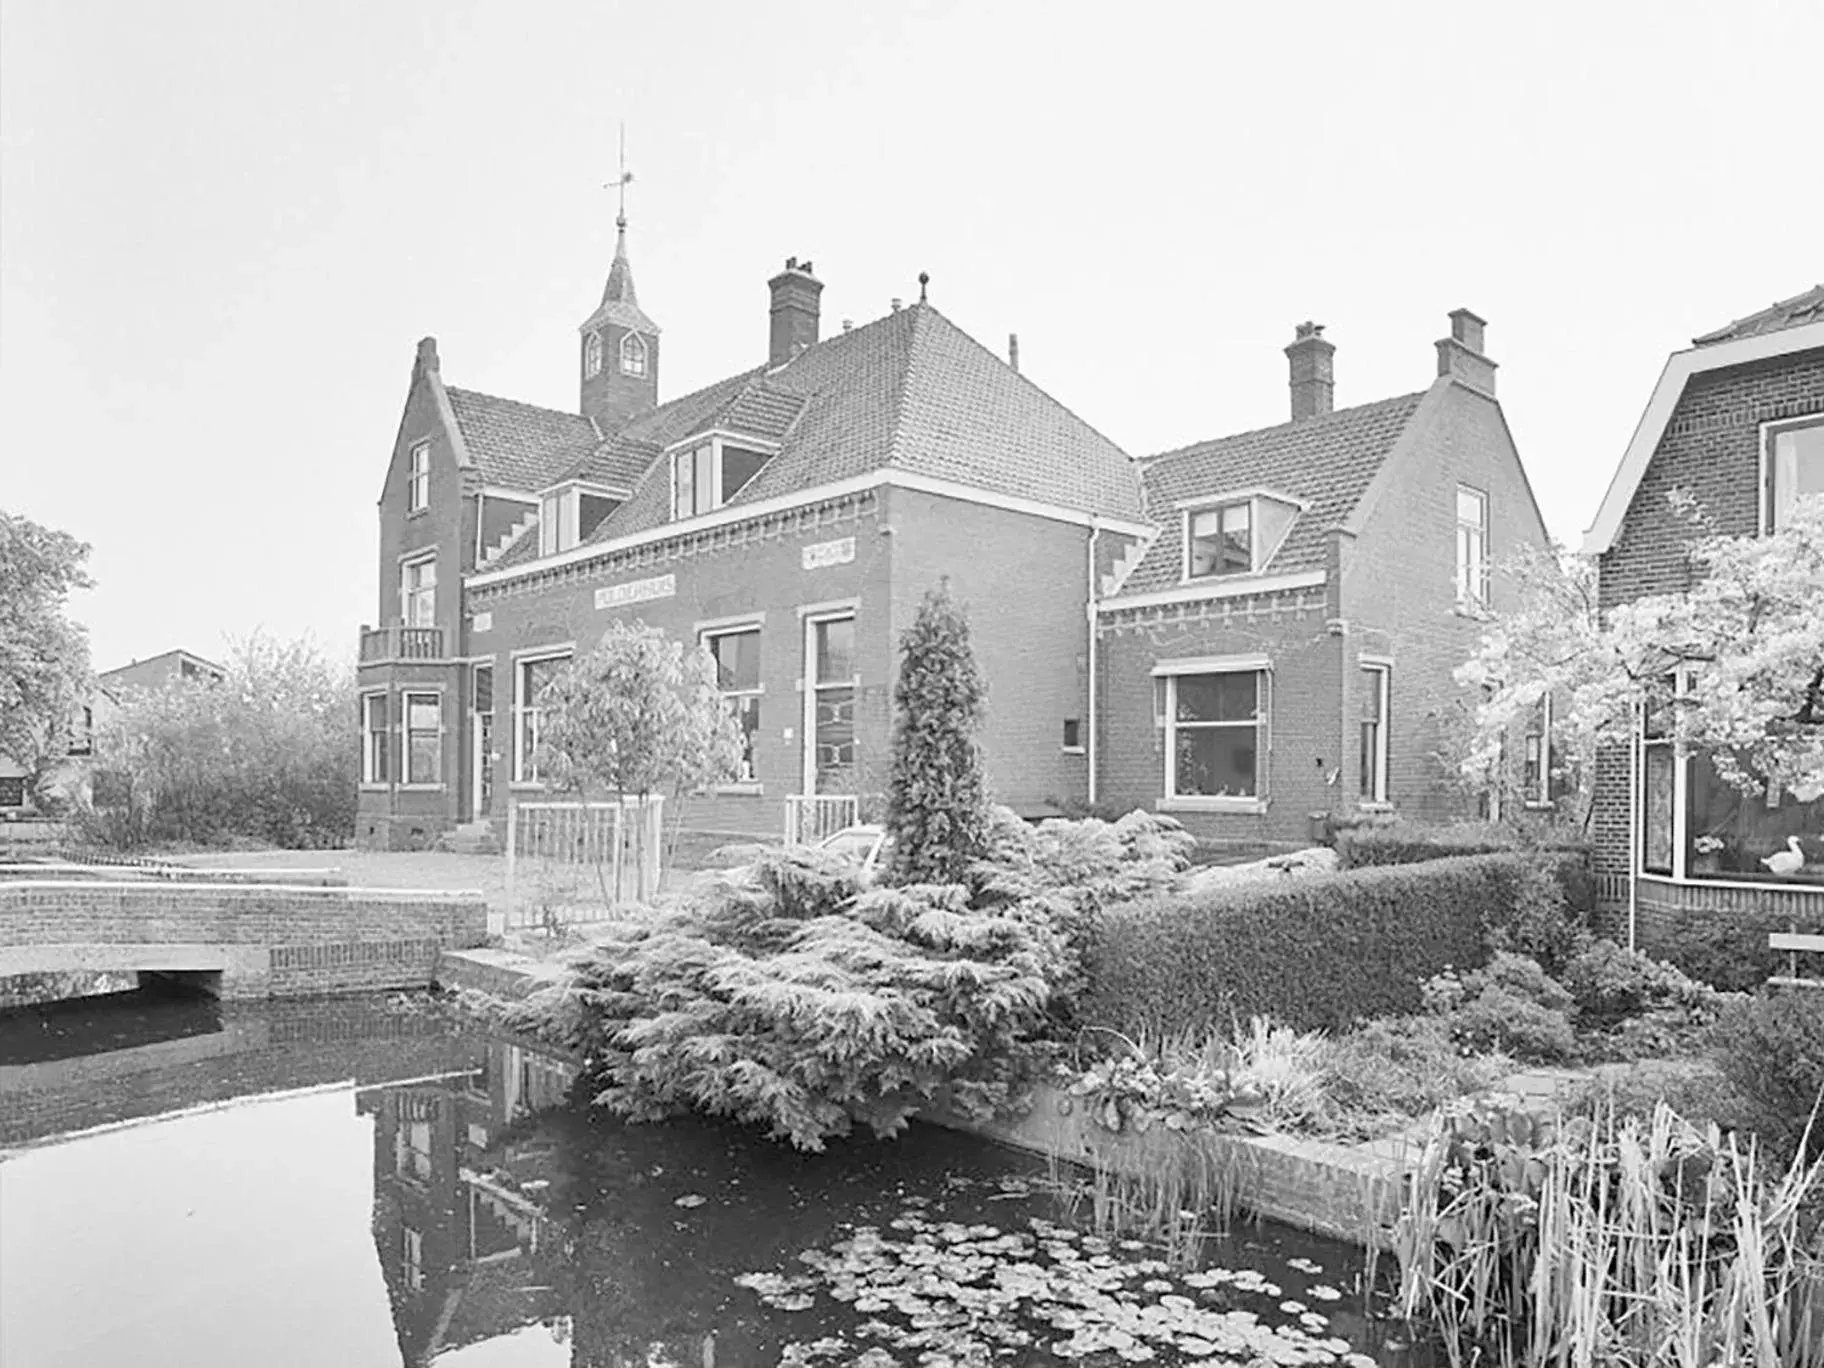 Property building, Winter in Polderhuis Bed & Breakfast